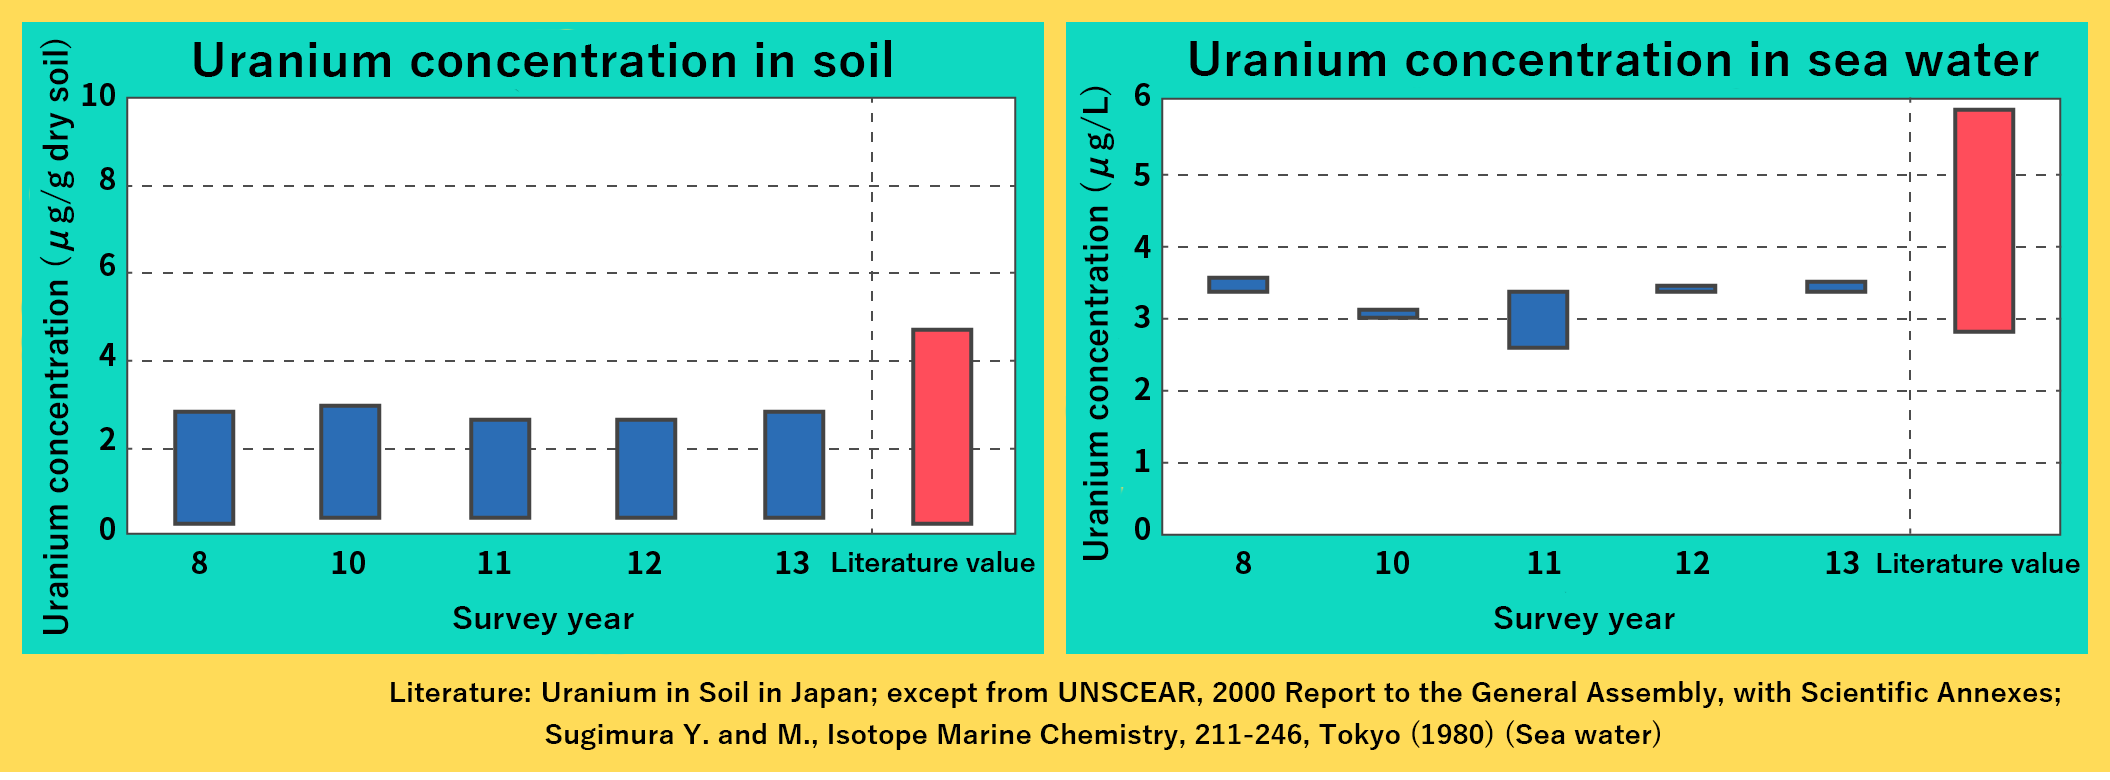 Uranium concentration